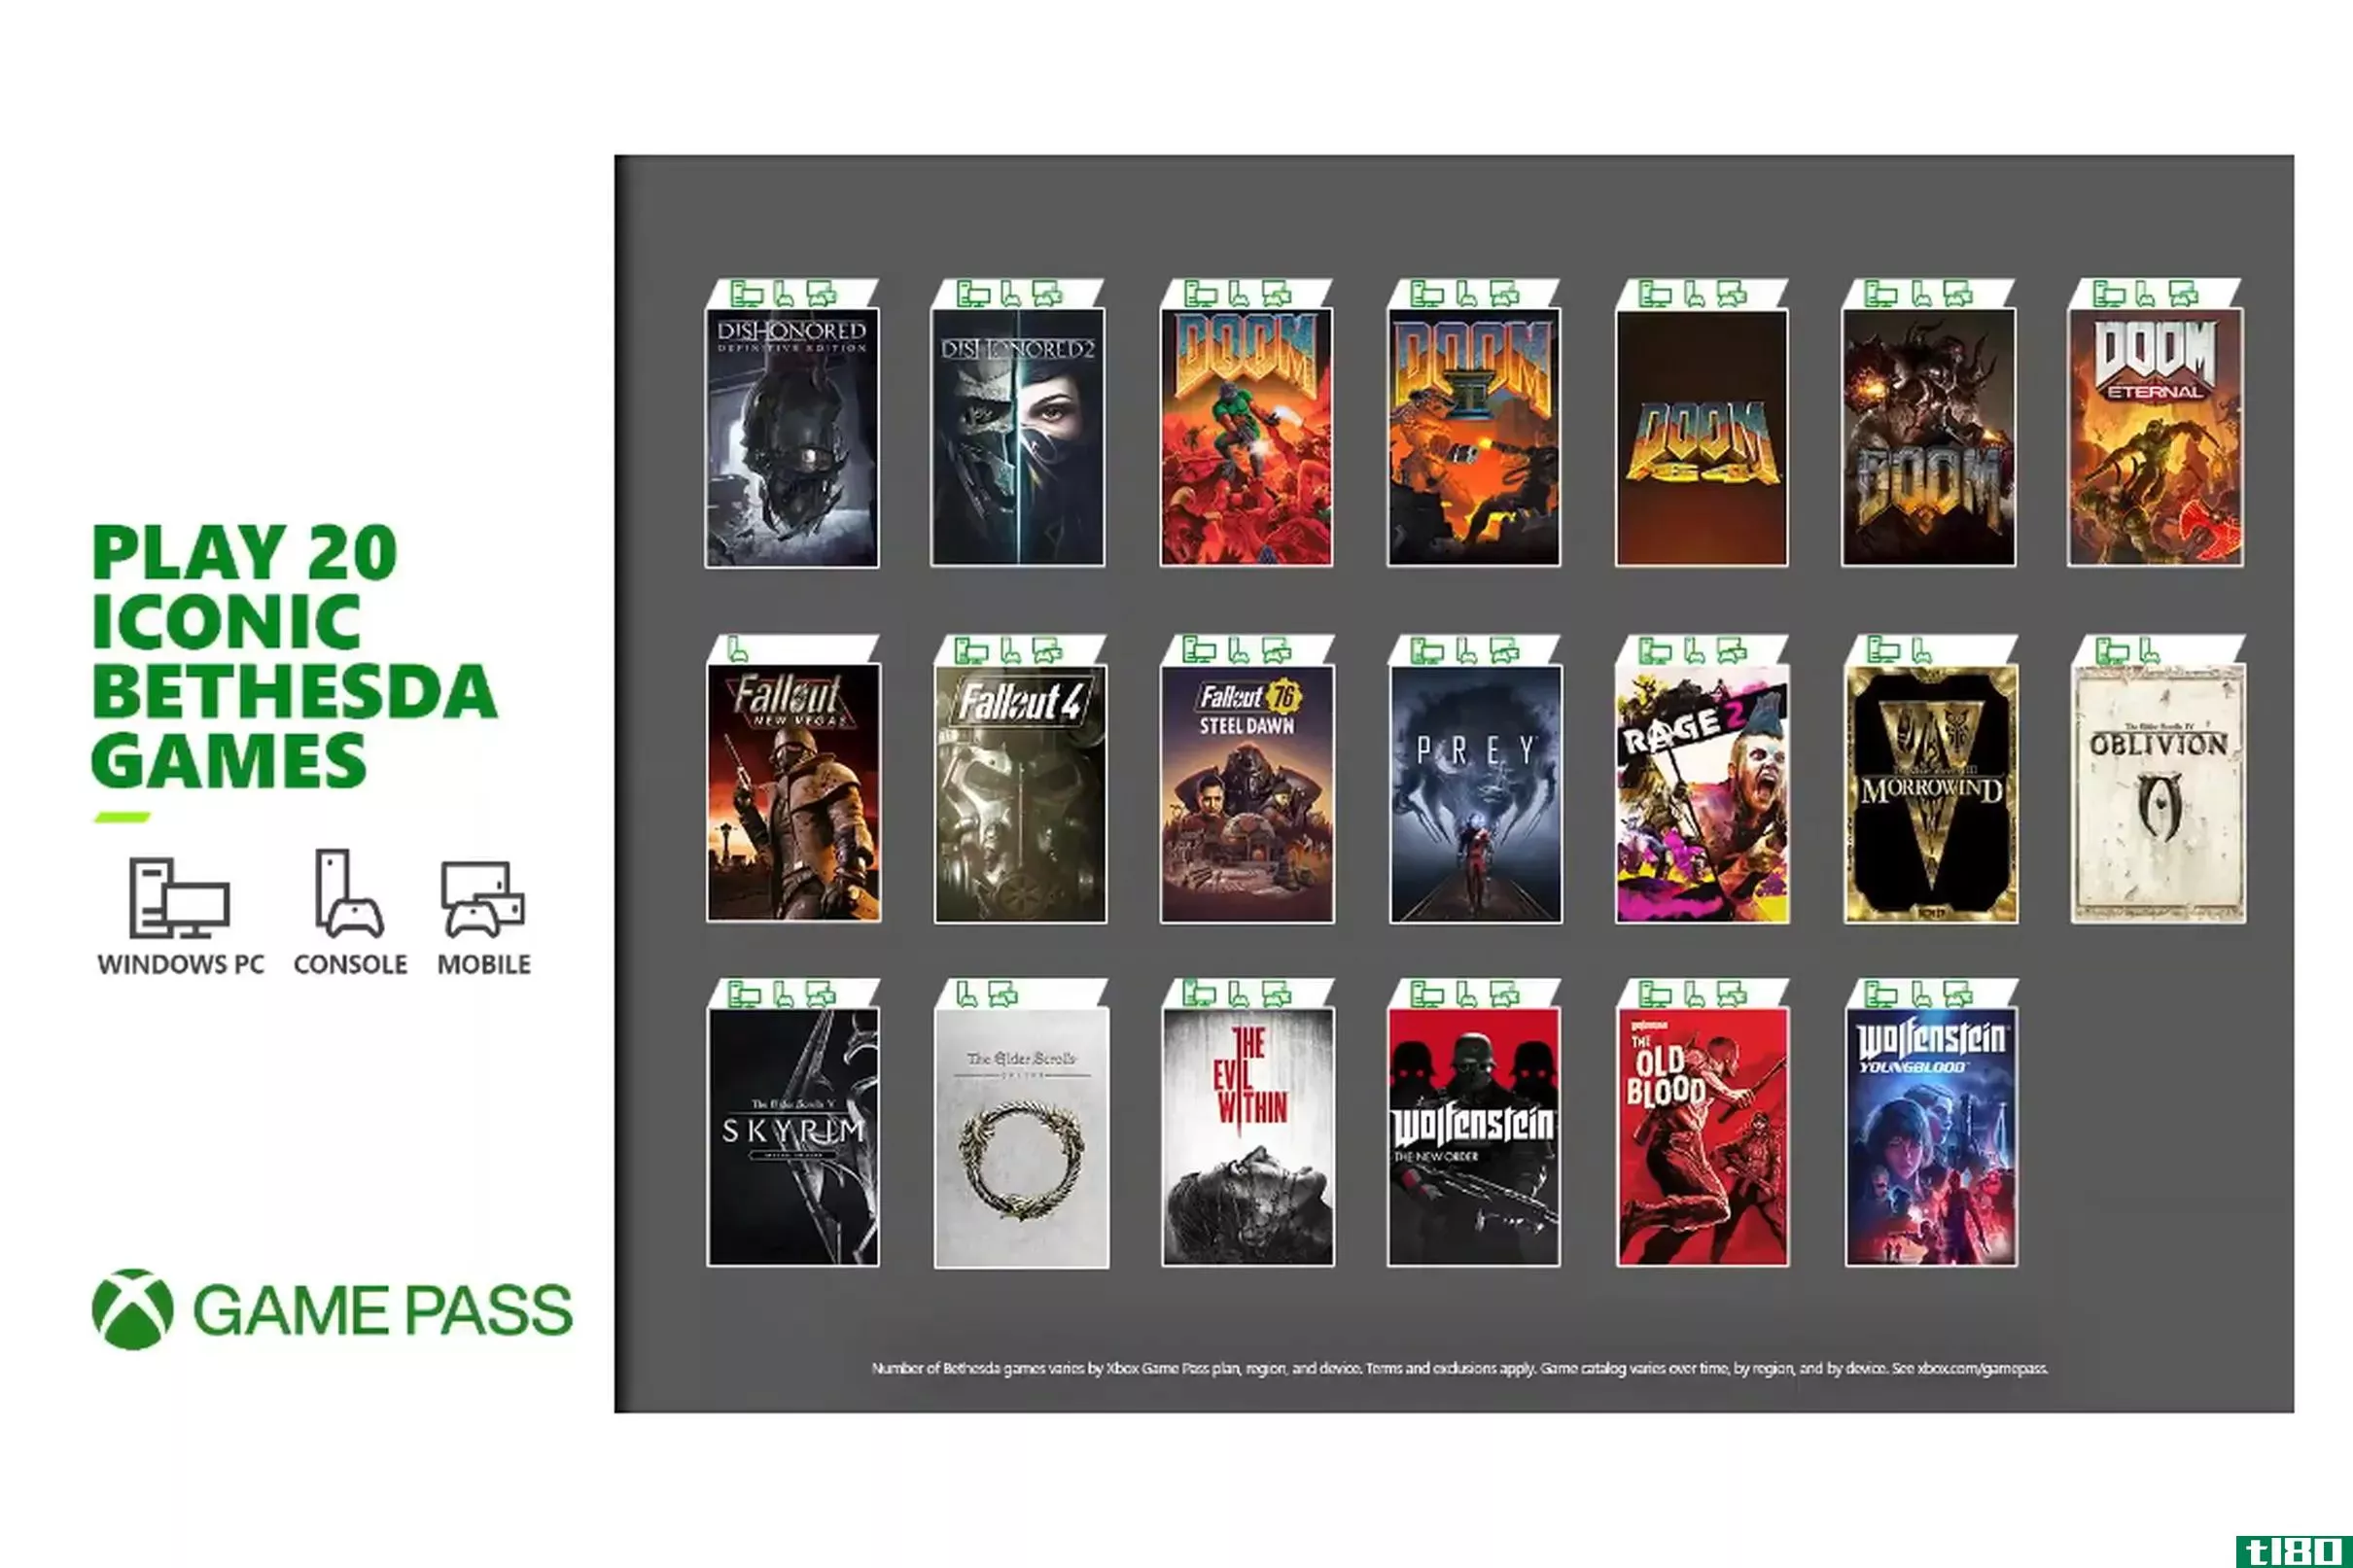 20款贝塞斯达游戏将于周五在xbox game pass上发售